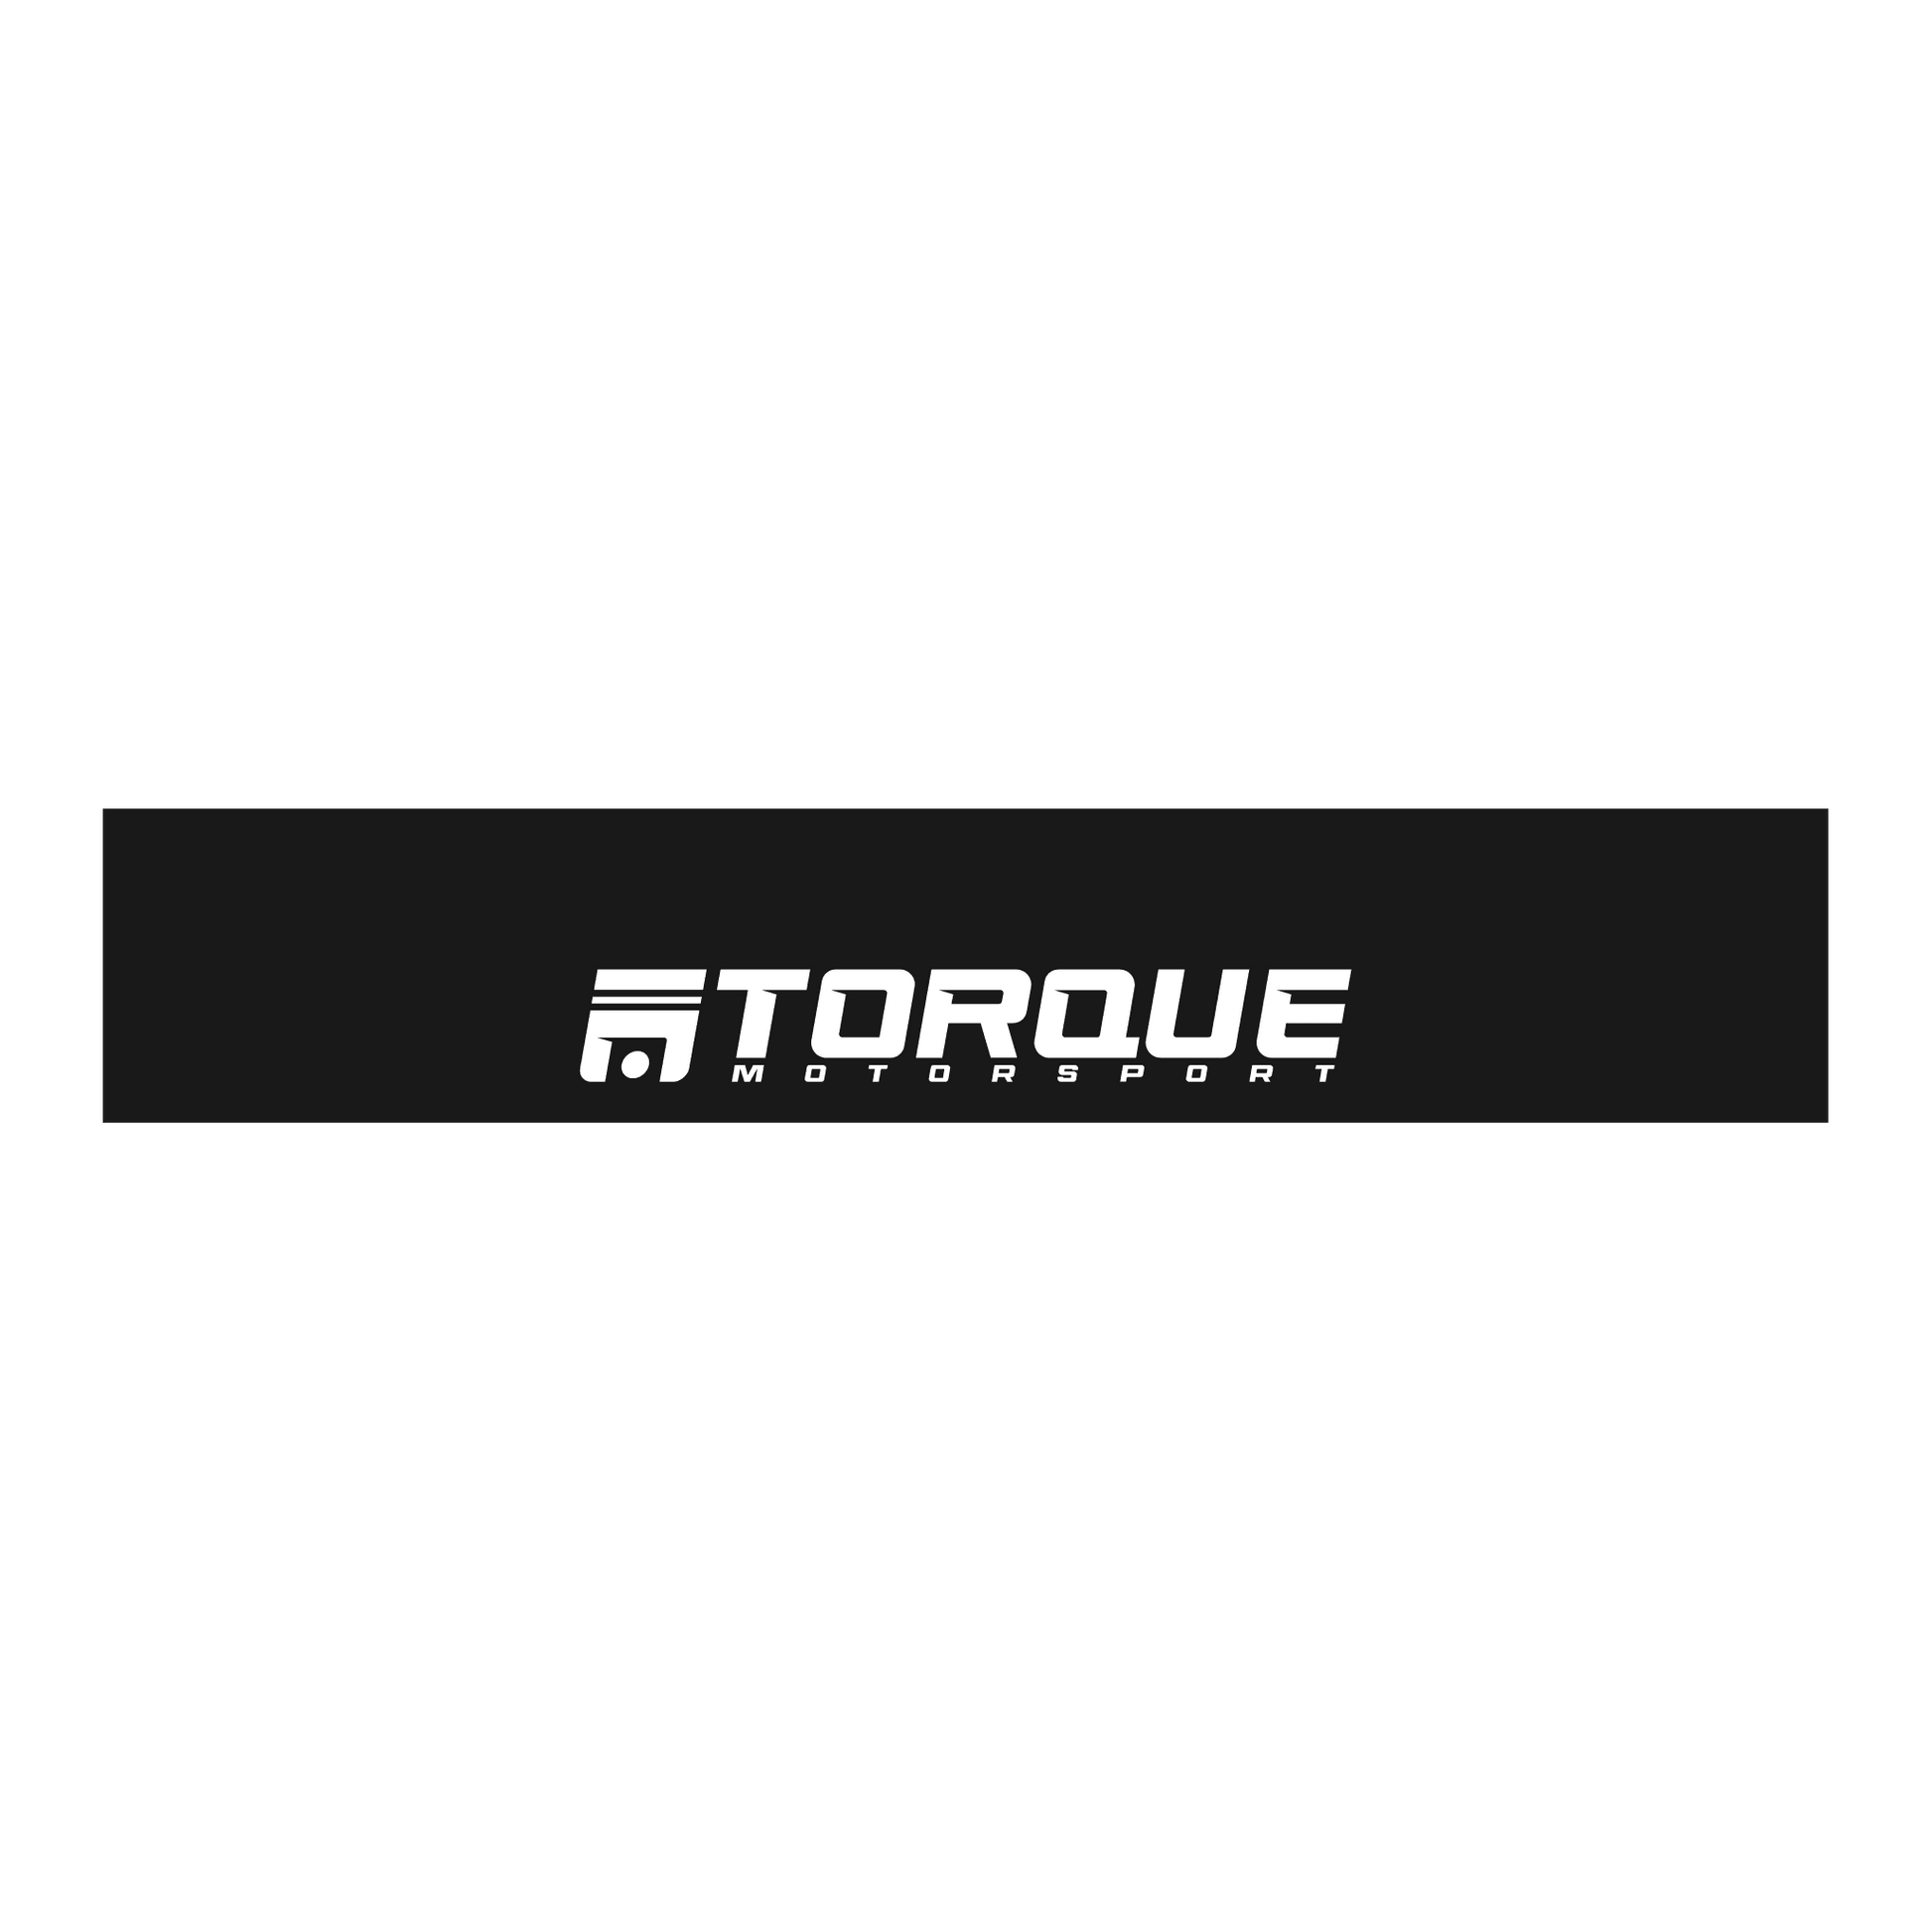 TM - Classic Torque Motorsport Windscreen Banner - Torque Motorsport